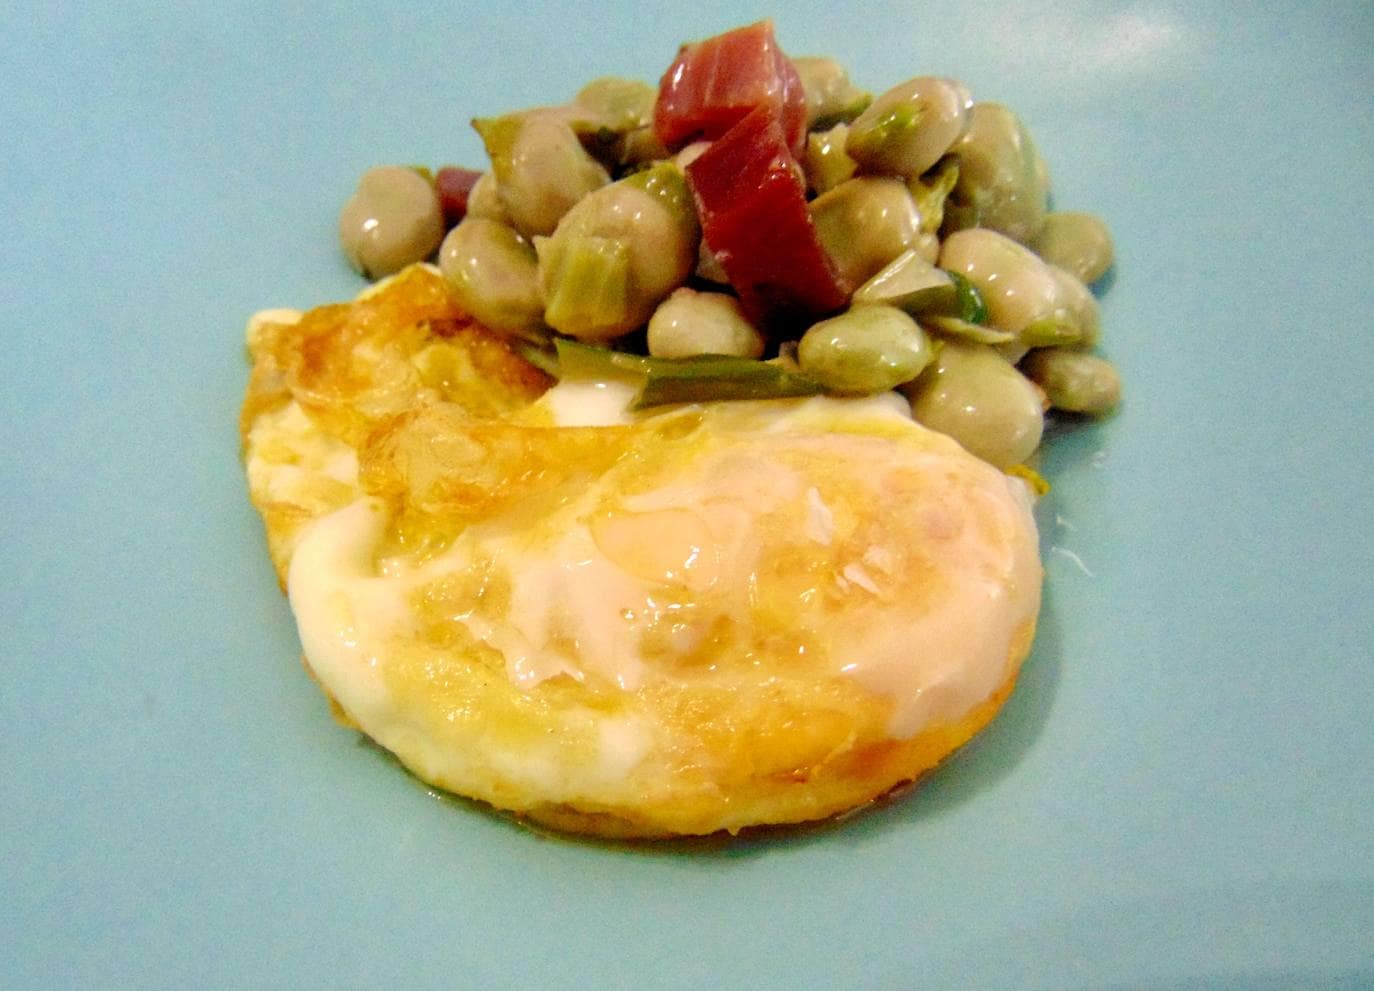 Los huevos fritos con habas y jamón serrano de La ruta del Veleta.